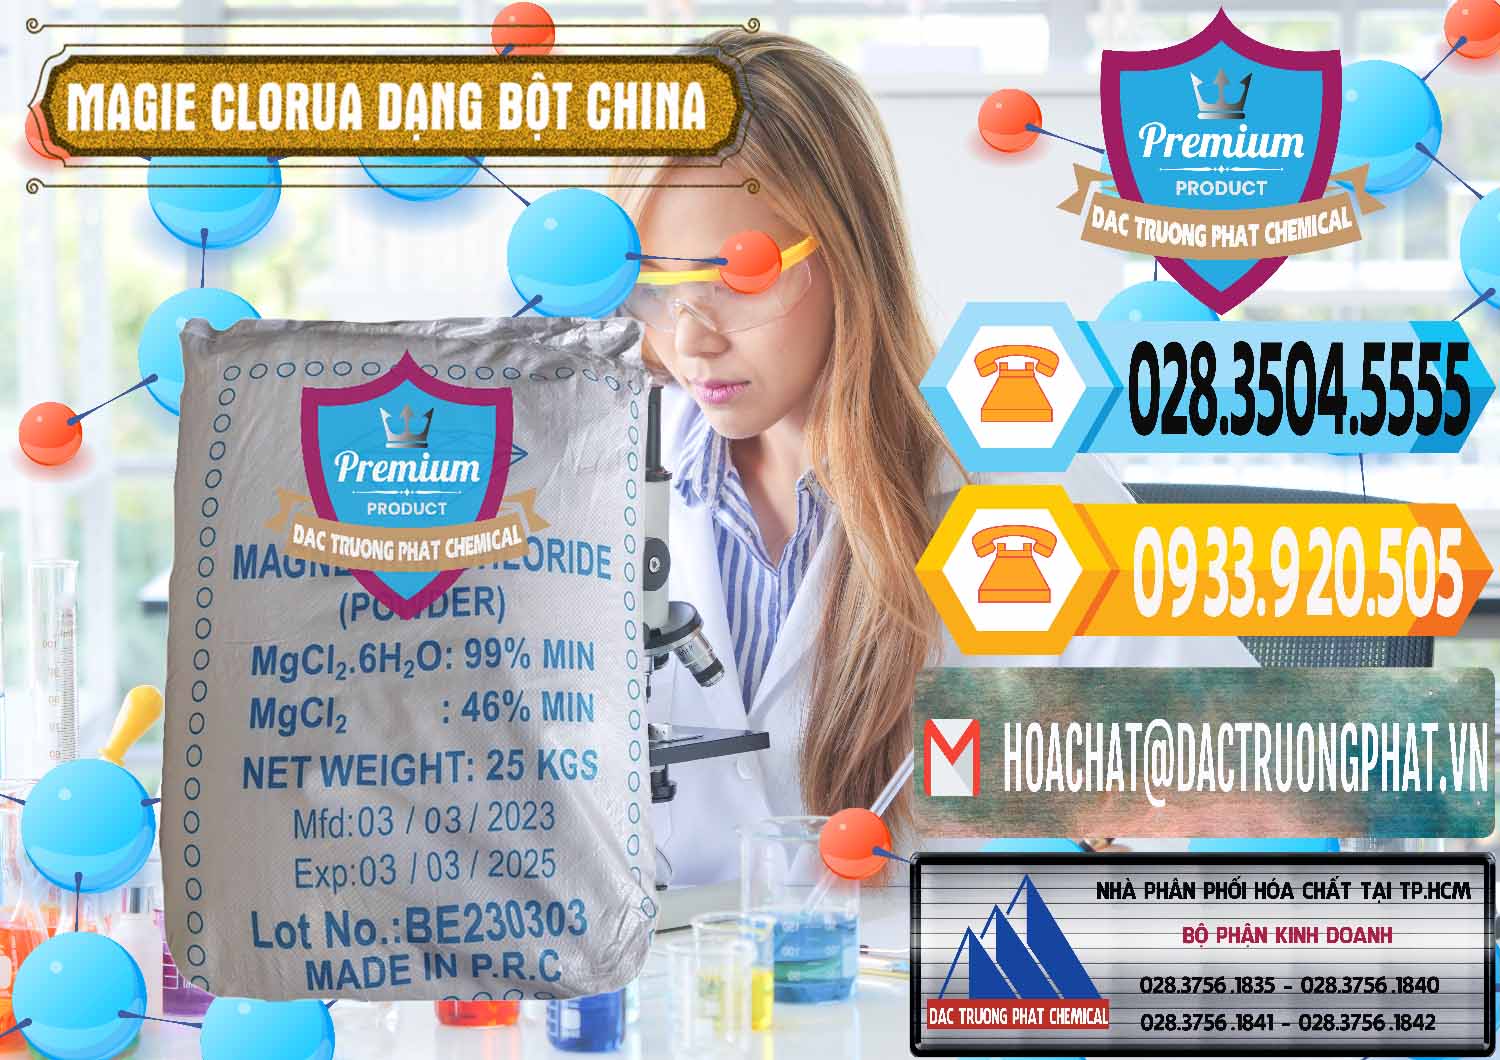 Chuyên bán & cung ứng Magie Clorua – MGCL2 96% Dạng Bột Logo Kim Cương Trung Quốc China - 0387 - Cty chuyên phân phối - cung ứng hóa chất tại TP.HCM - hoachattayrua.net